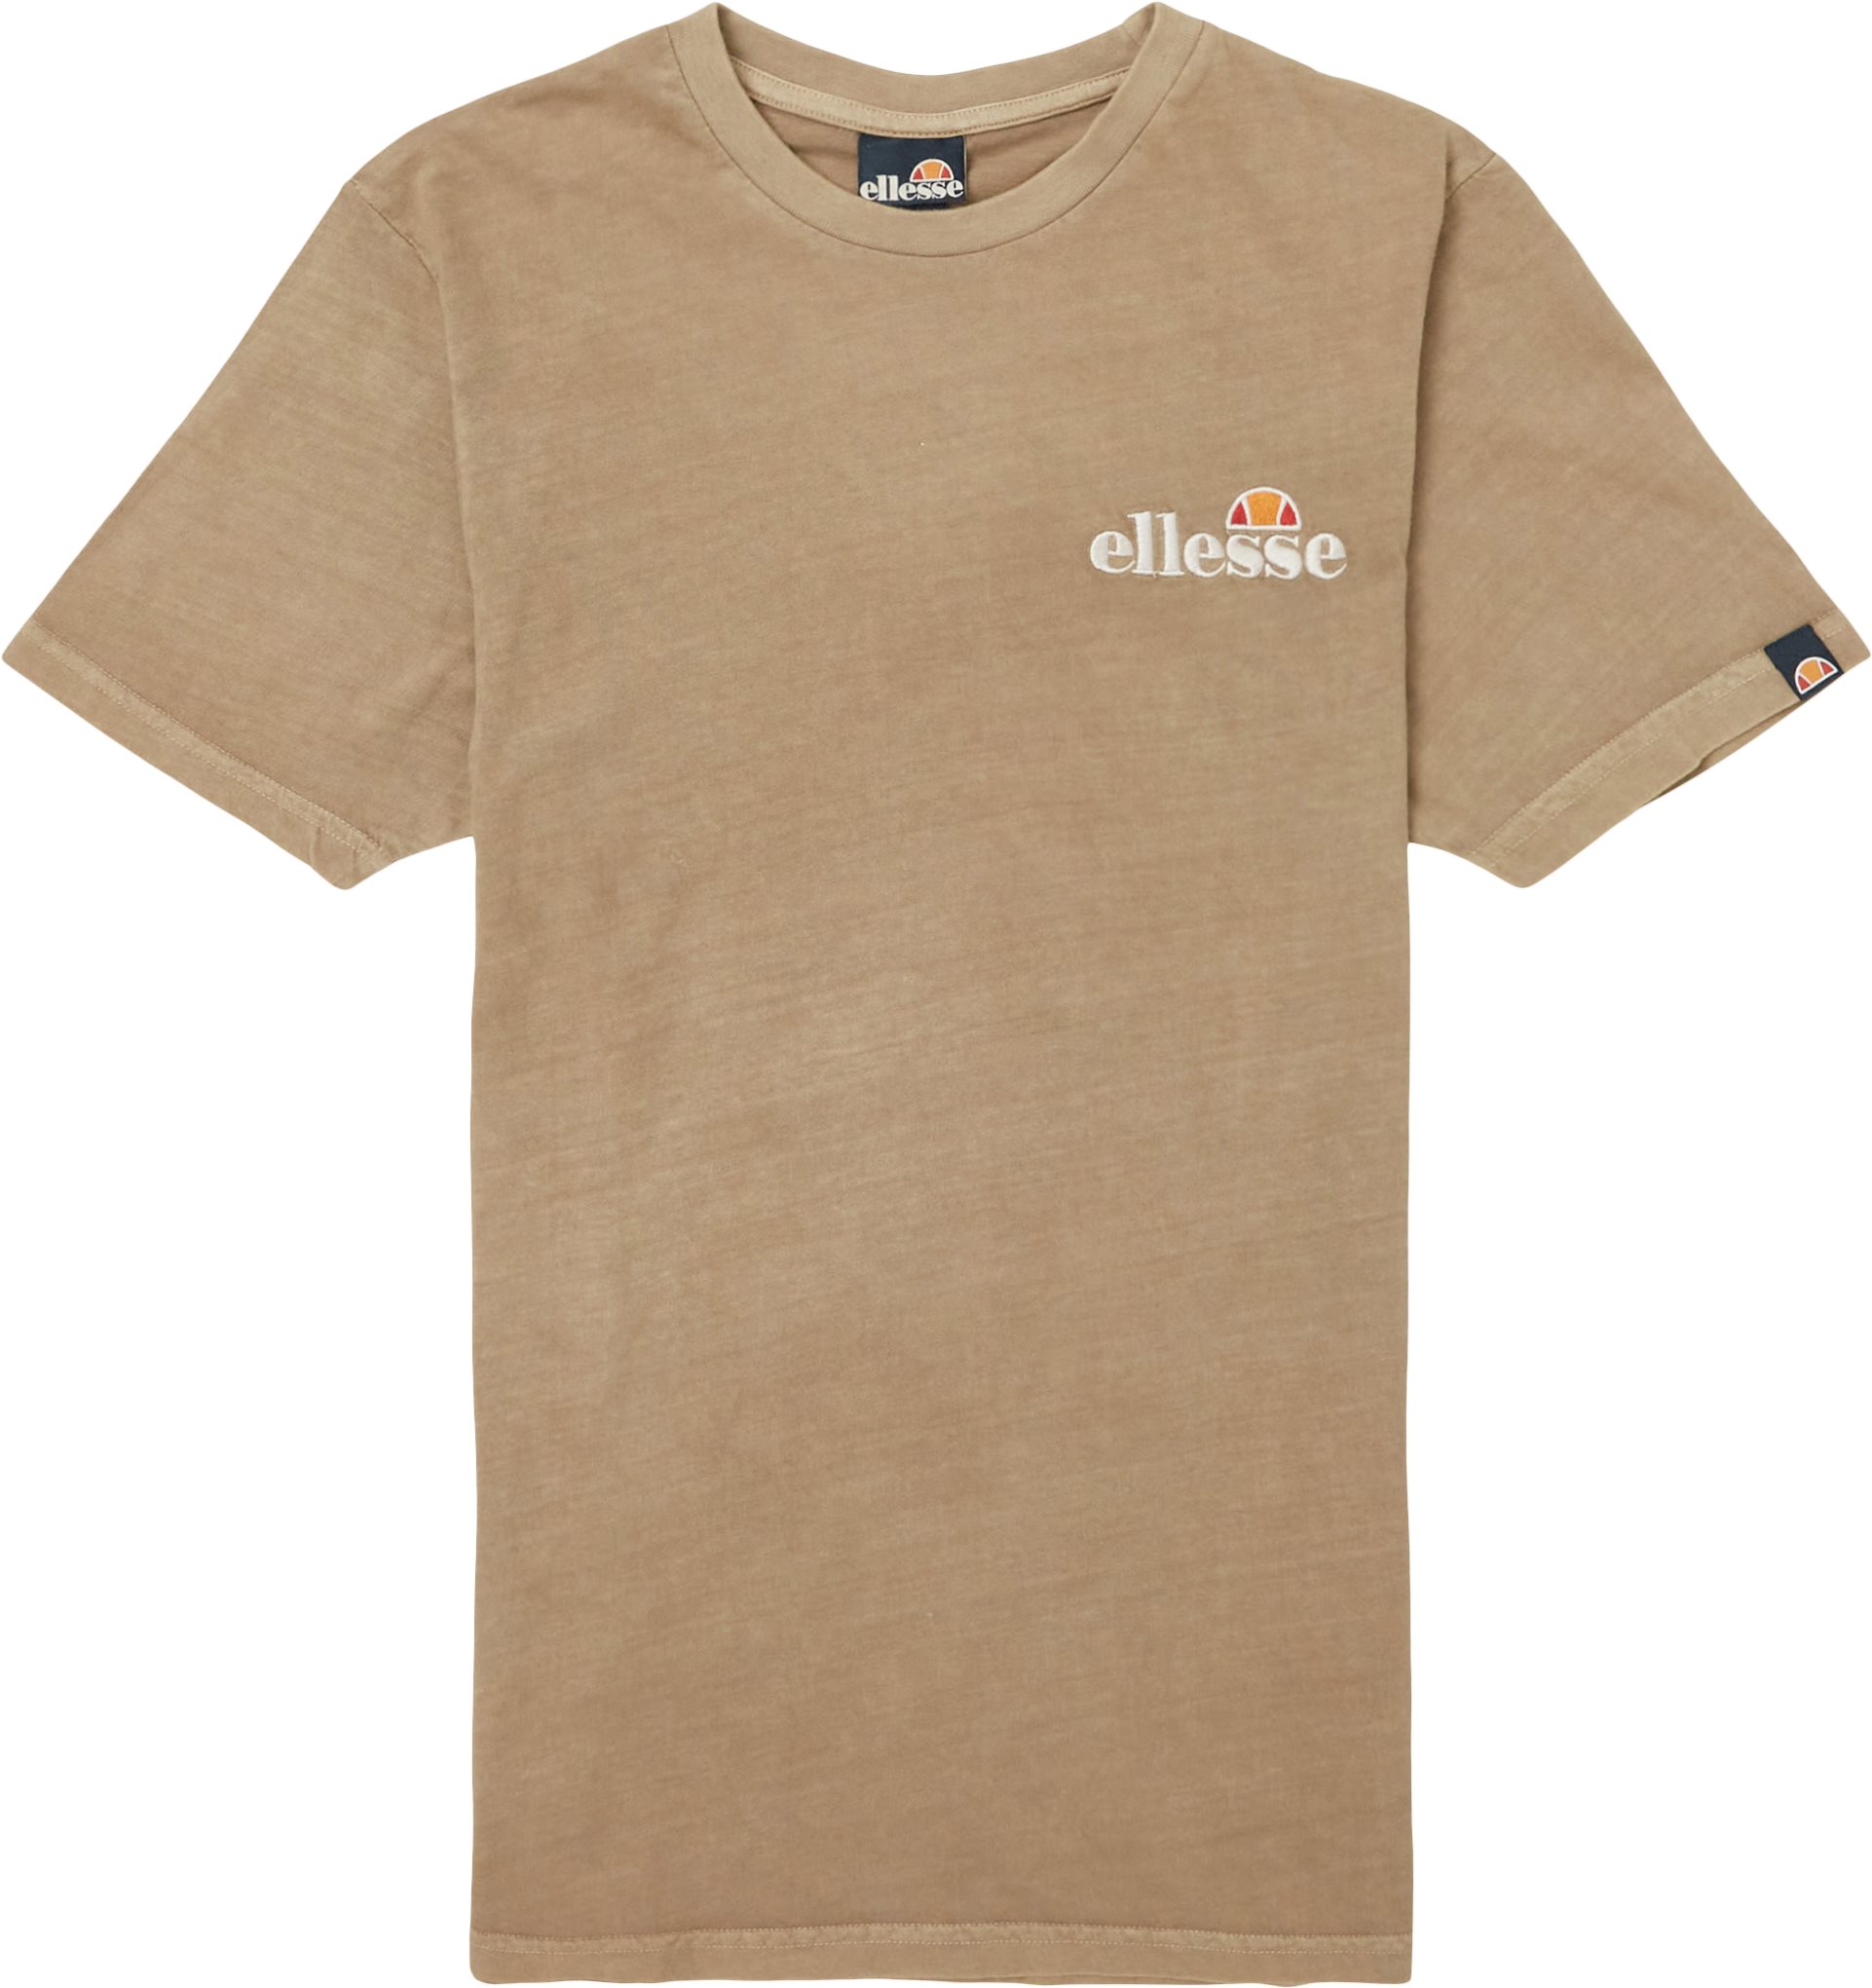 El Tacomo Tee - T-shirts - Regular fit - Brown